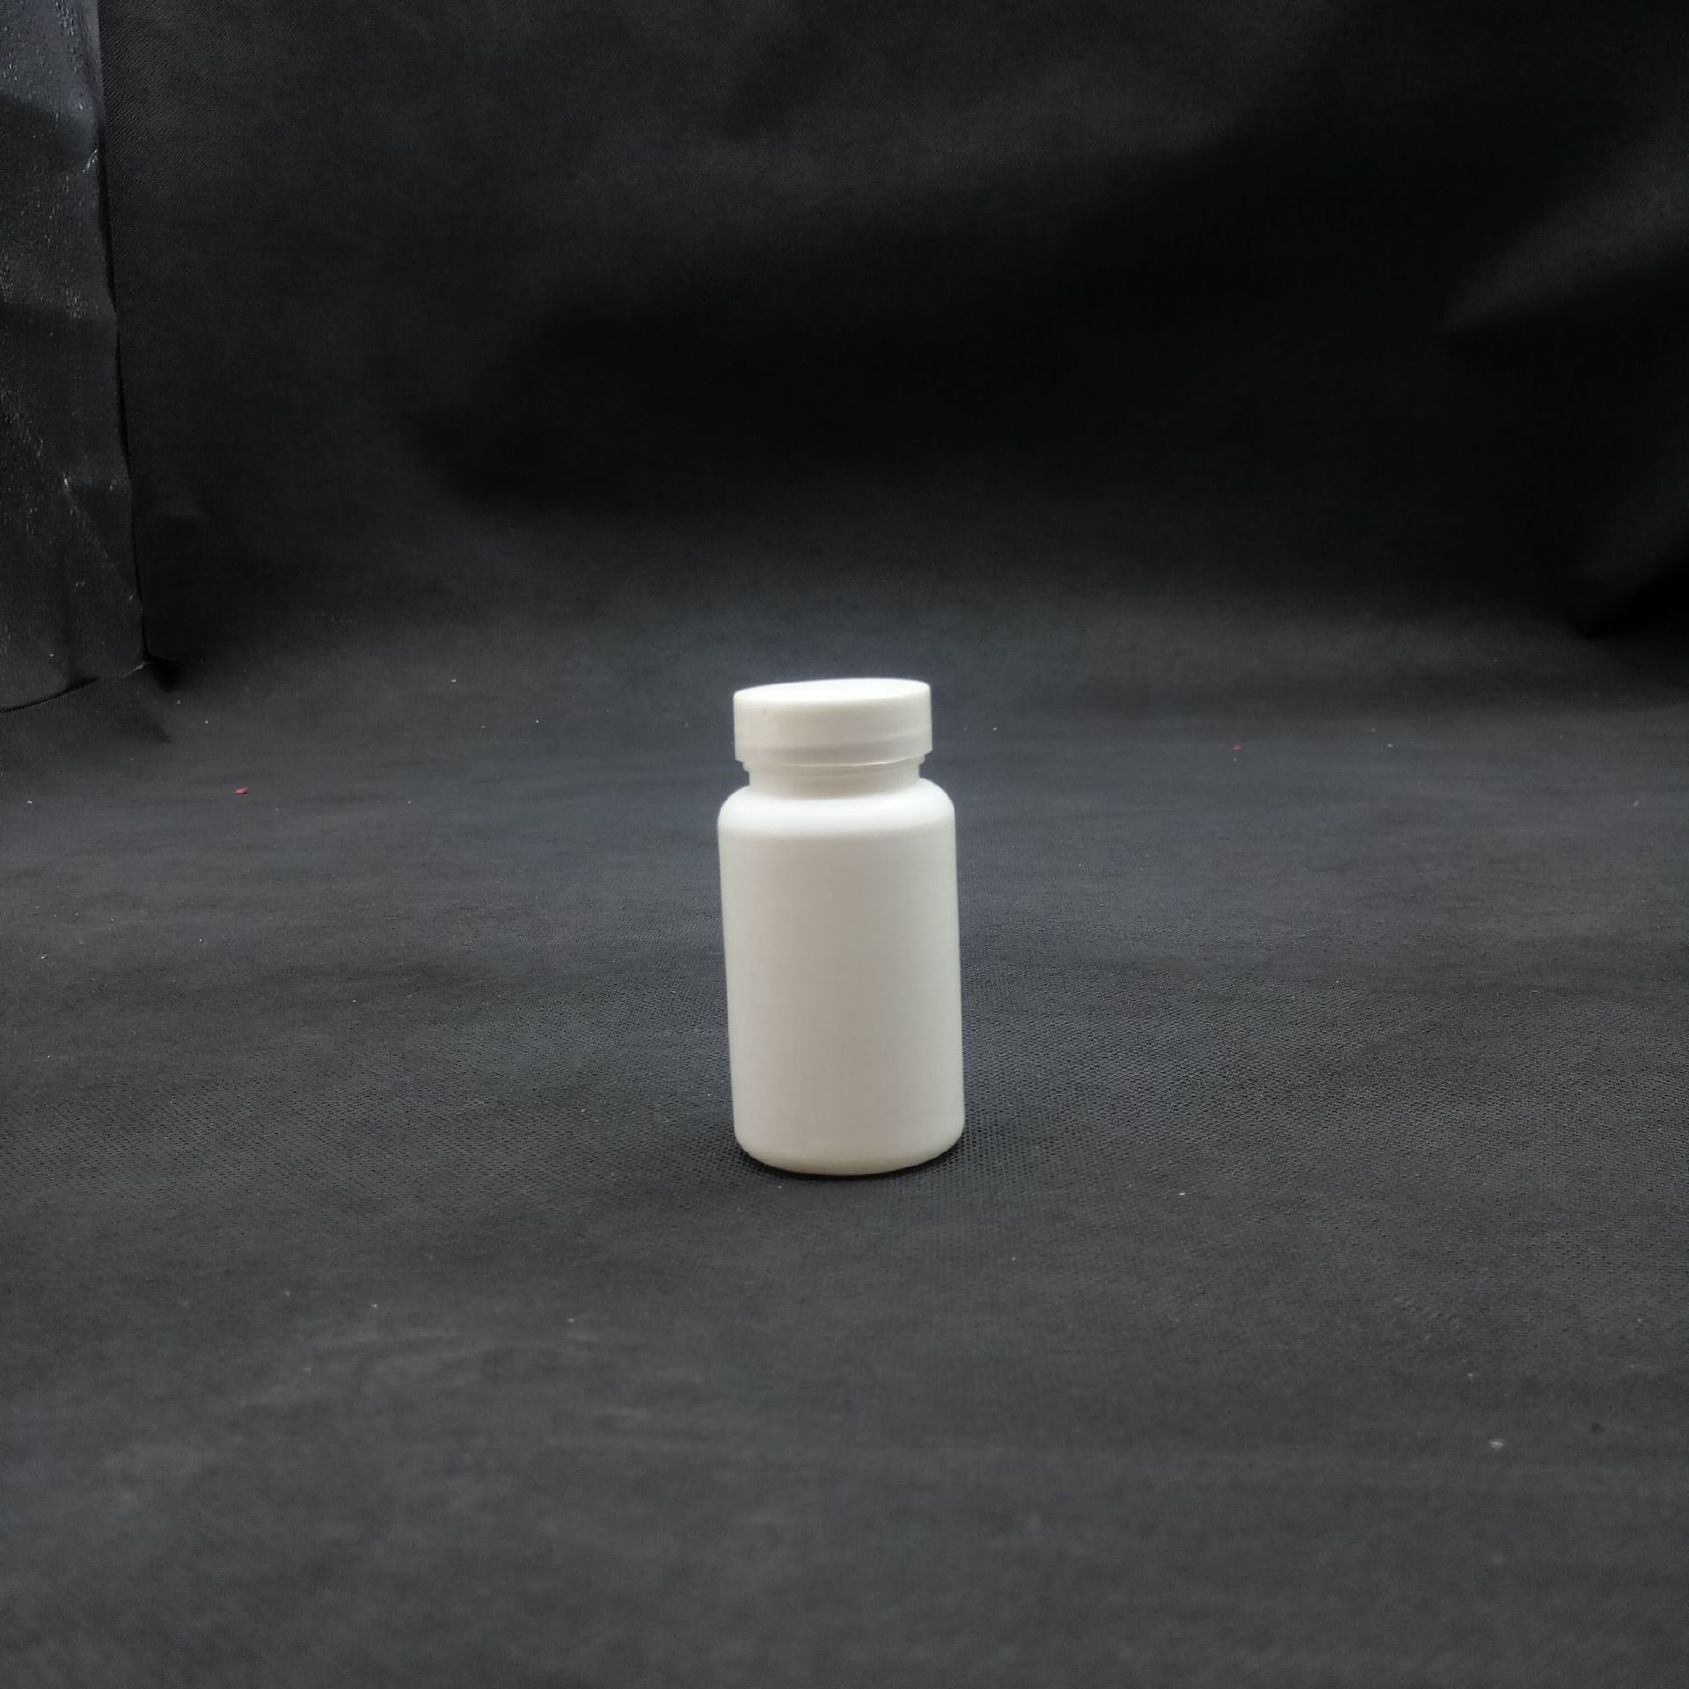 厂家批发50g高密度聚乙烯大口粉瓶兽药鱼药保健品瓶示例图6